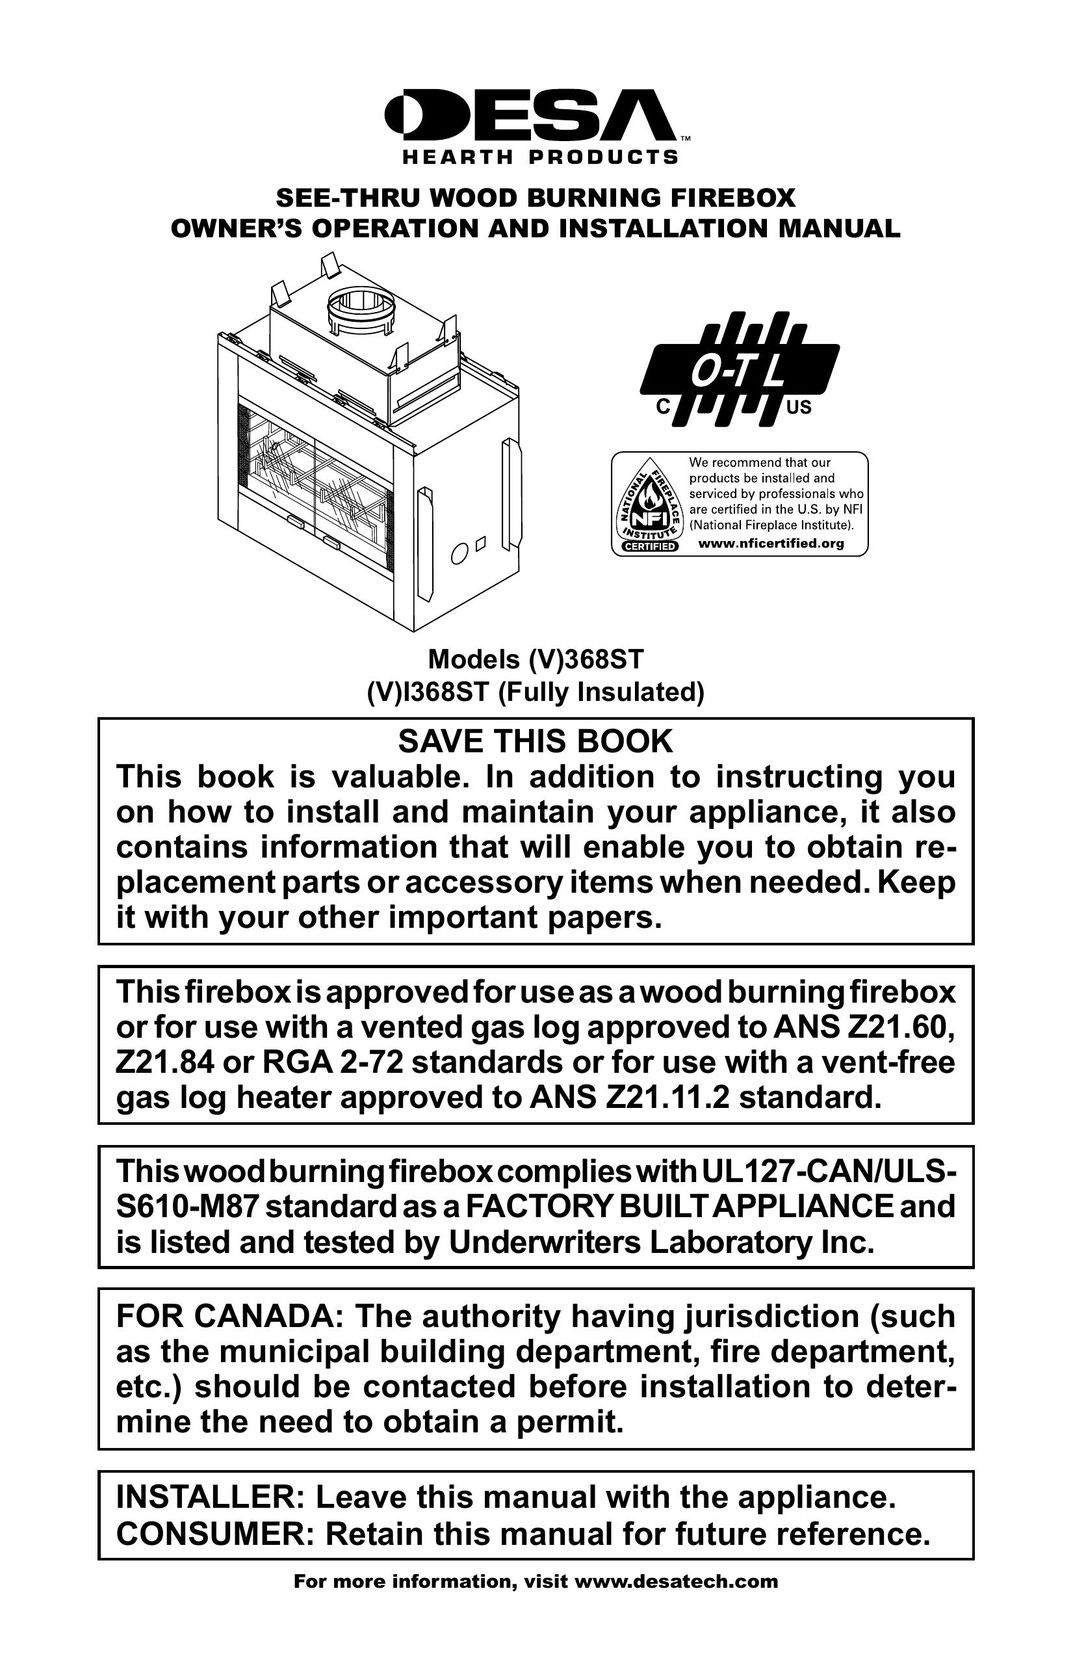 Desa (V)368ST Indoor Fireplace User Manual